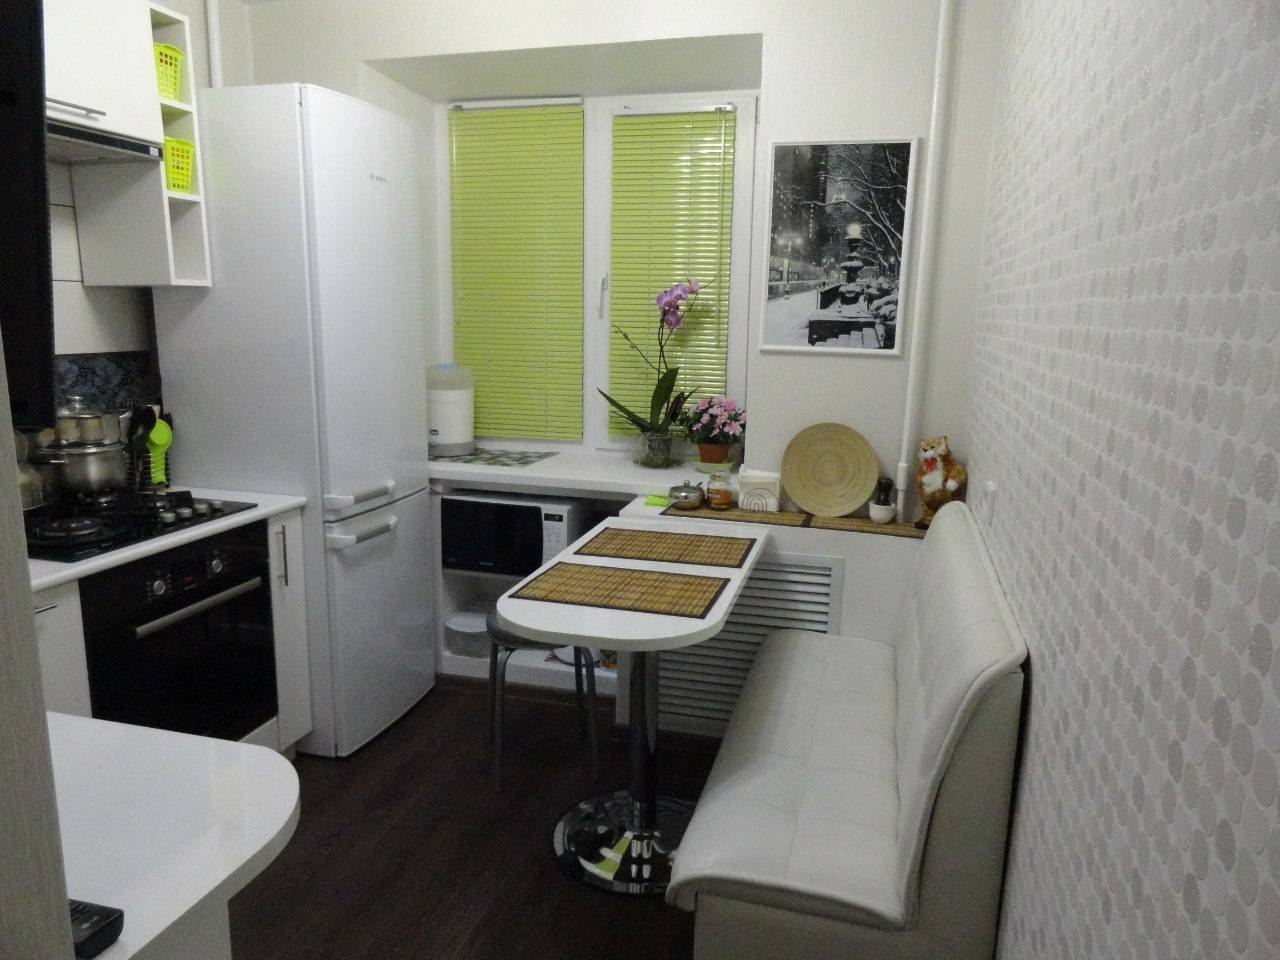 Интерьер кухни 6 кв м. фото дизайн интерьера маленькой кухни 6 кв м